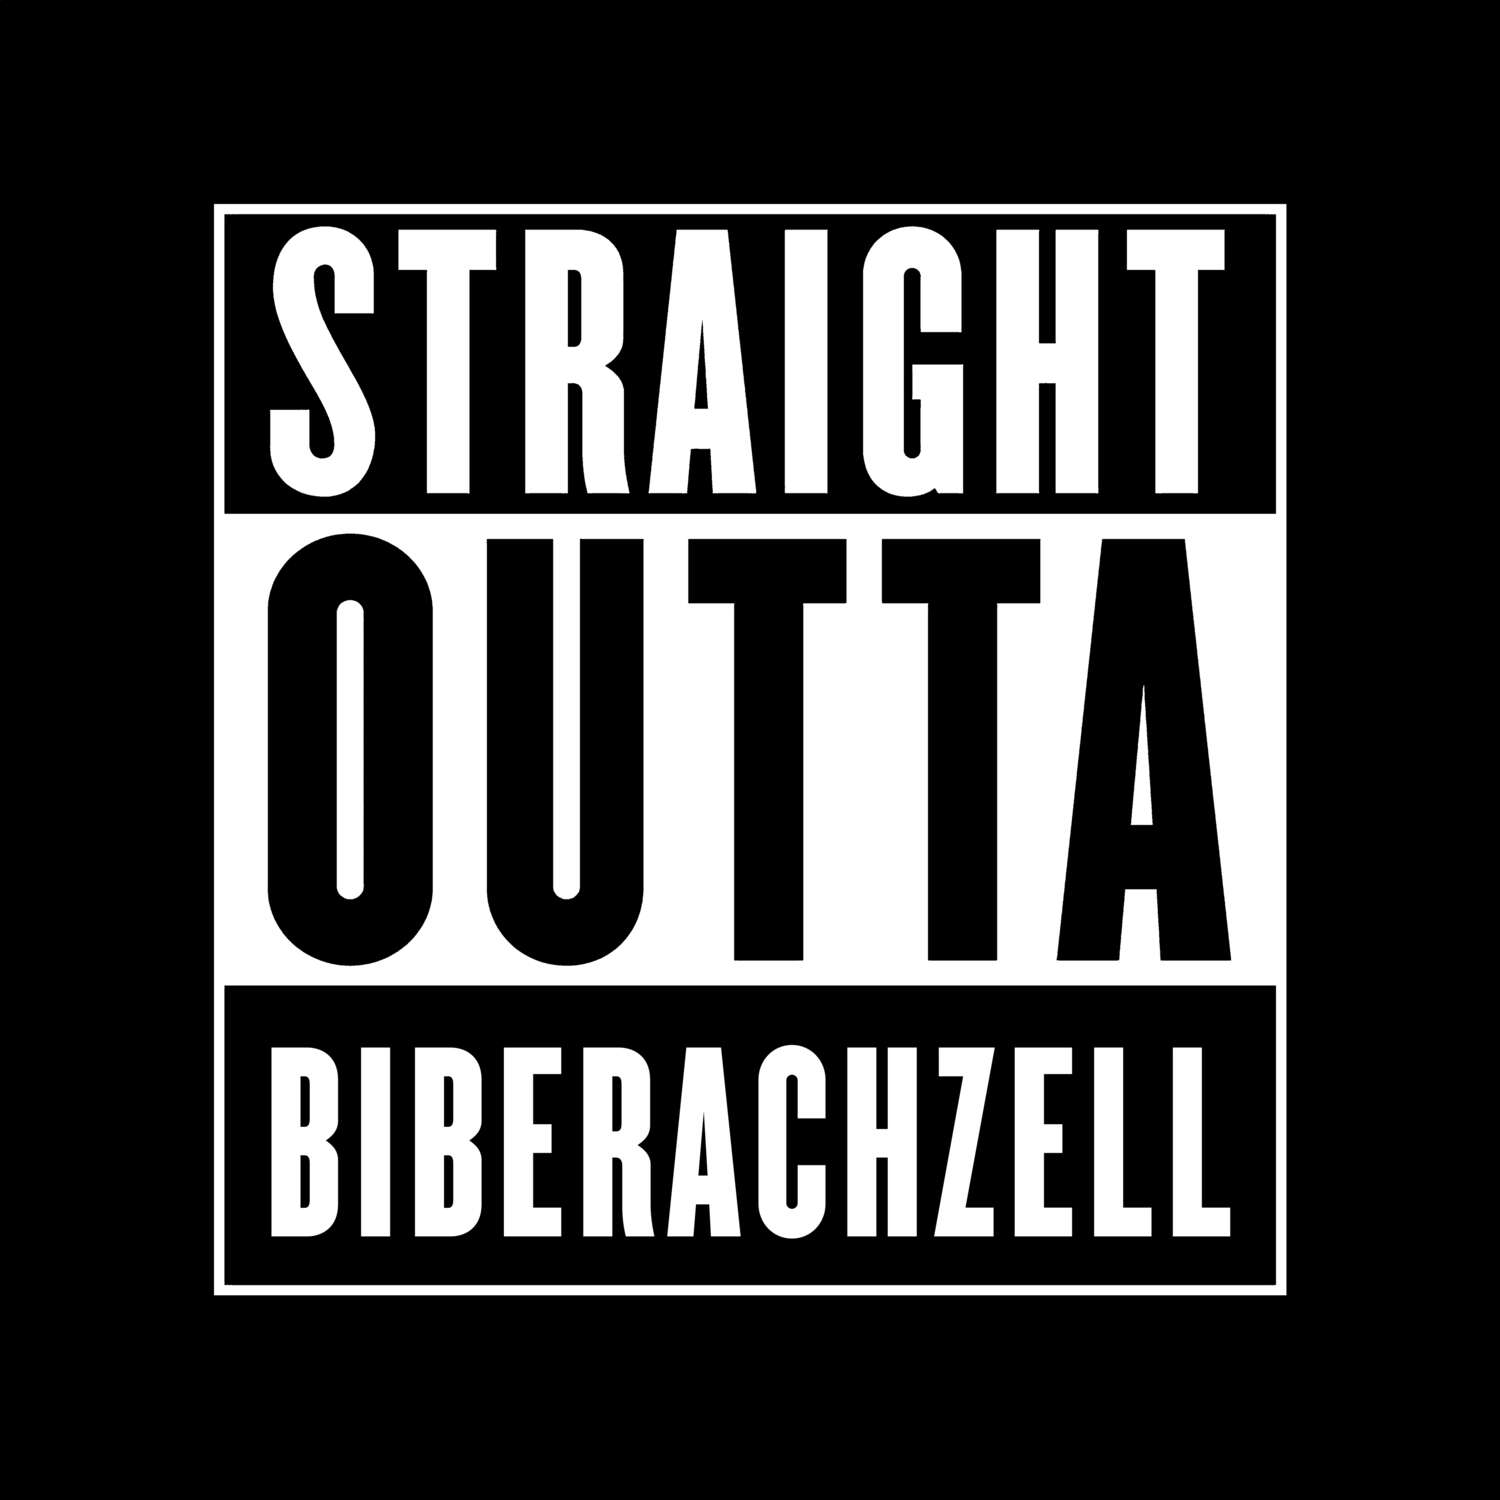 Biberachzell T-Shirt »Straight Outta«